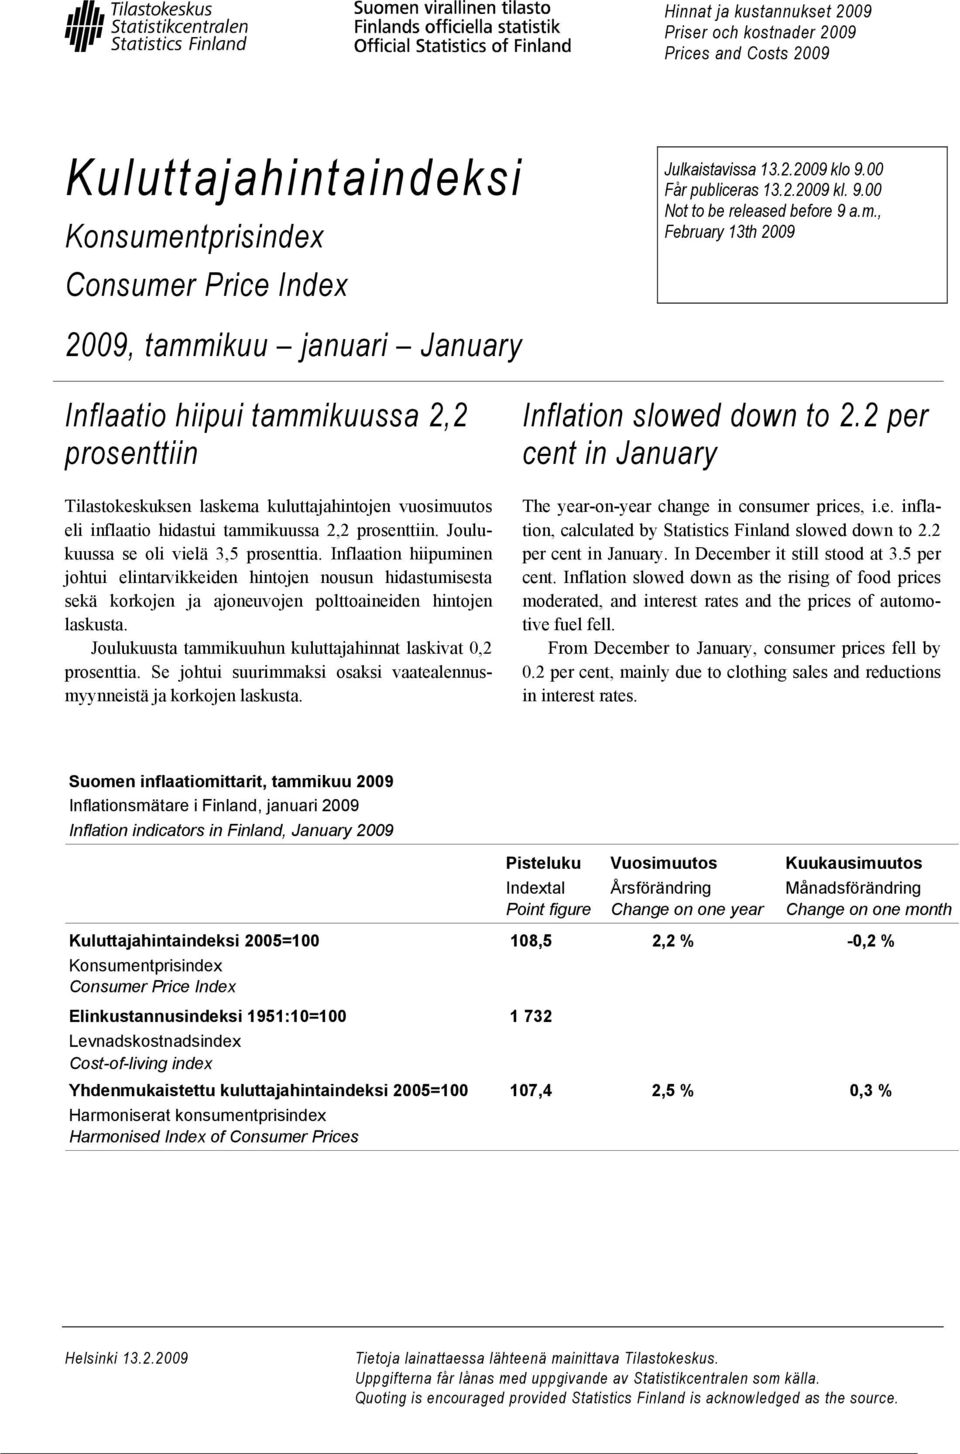 , February 13th 2009 2009, tammikuu januari January Inflaatio hiipui tammikuussa 2,2 prosenttiin Tilastokeskuksen laskema kuluttajahintojen vuosimuutos eli inflaatio hidastui tammikuussa 2,2